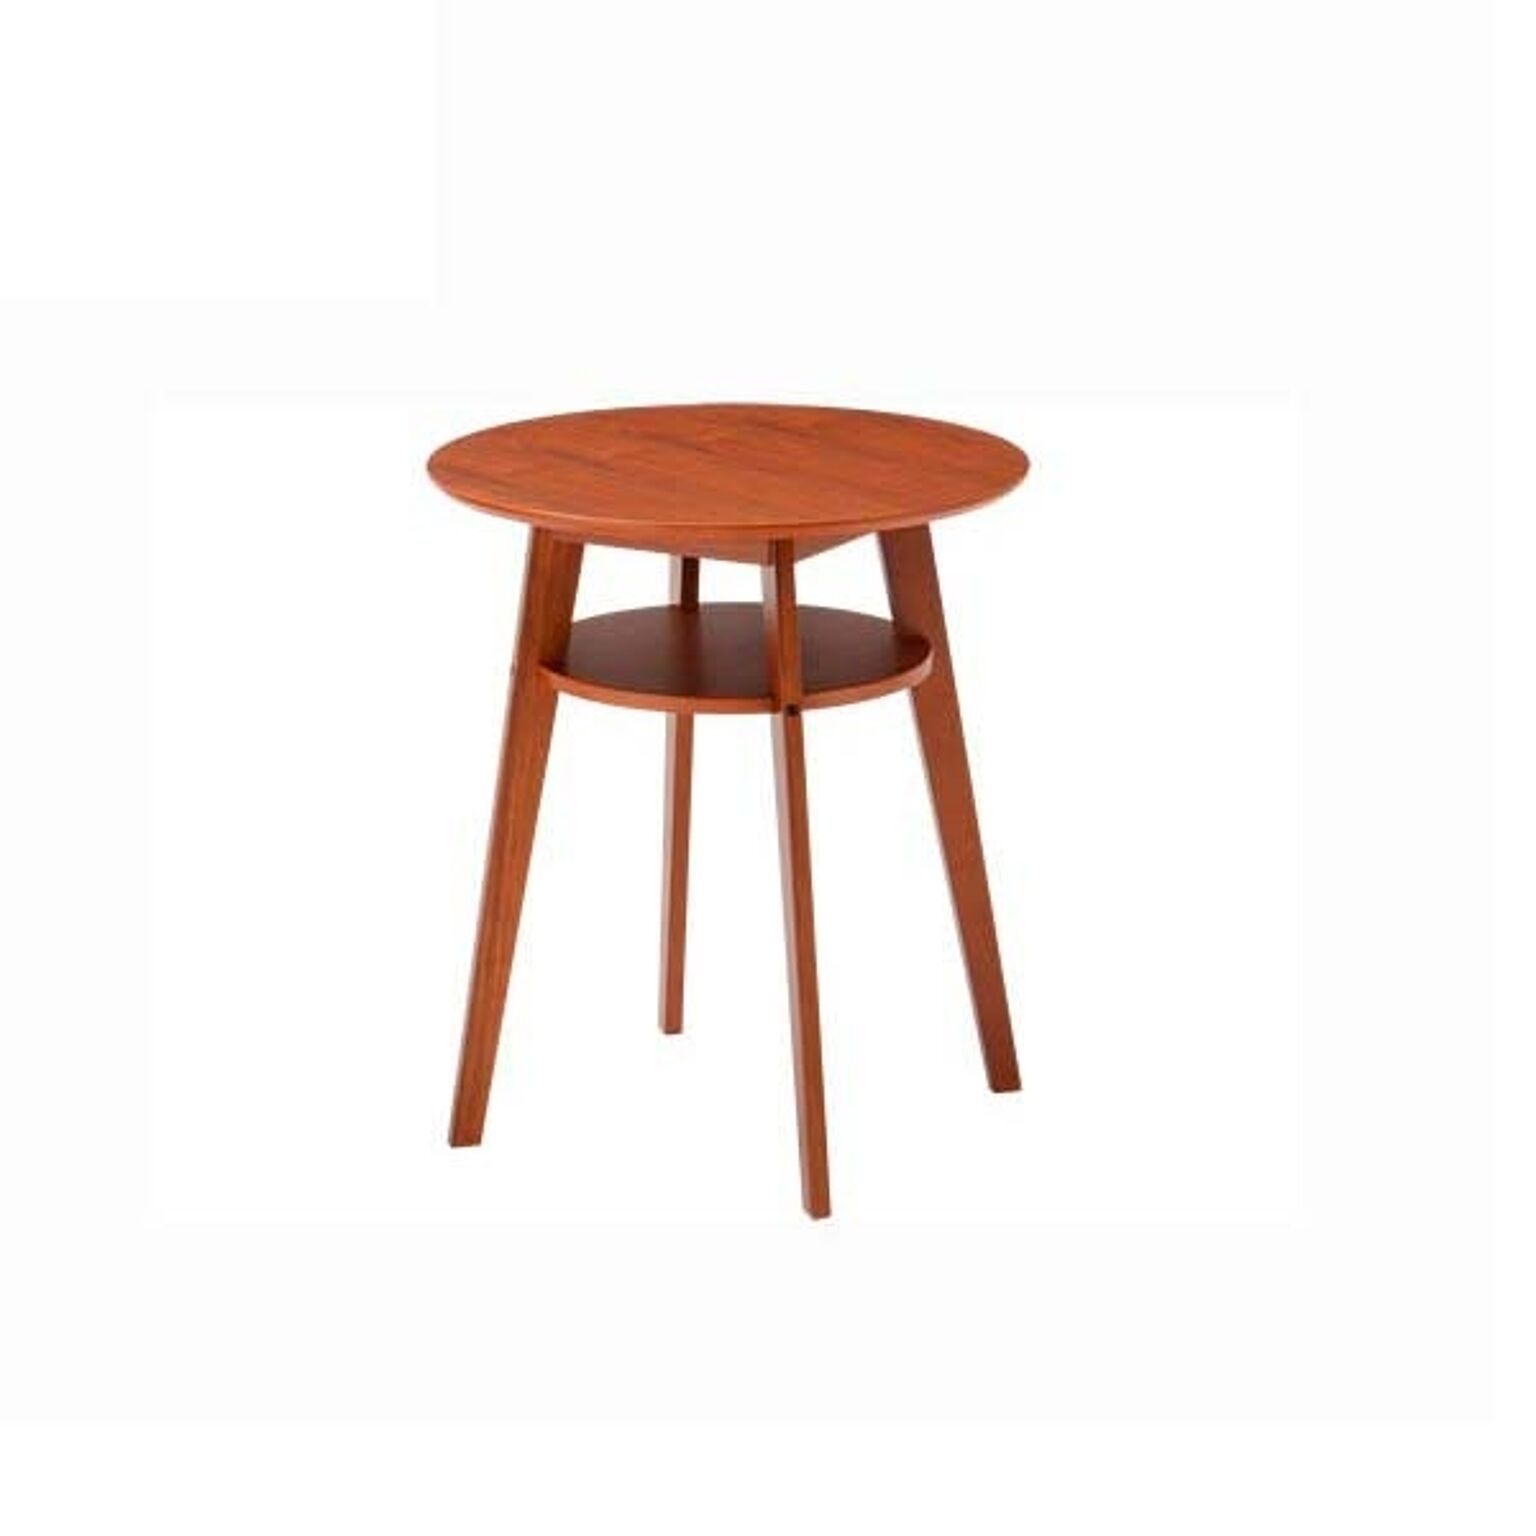 サイドテーブル 幅60 高さ69 円形テーブル 天然木 ウォールナット MDF カフェテーブル コーヒーテーブル ナチュラル ディオーネ SST990 北欧テイスト